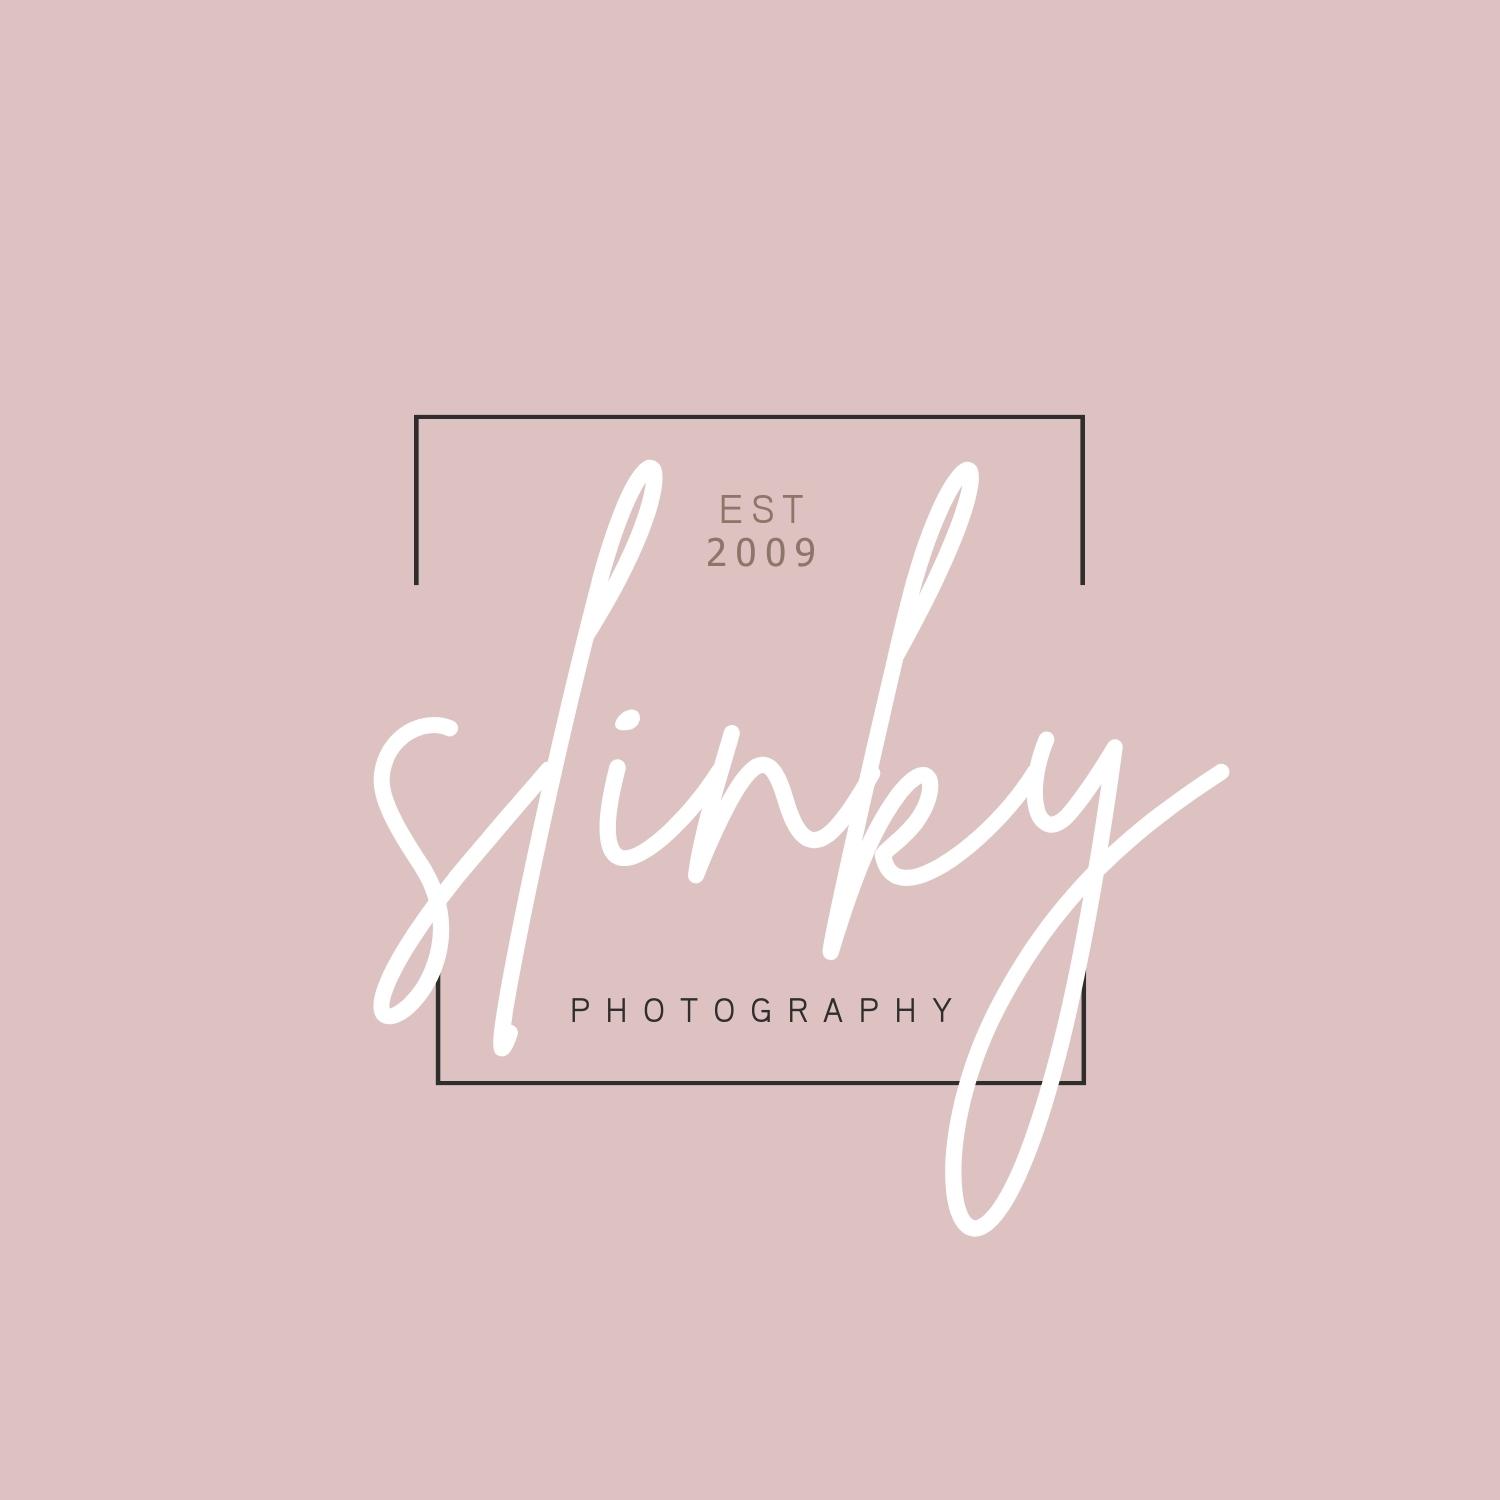 Slinky Photography Studio - Wirral - Logo